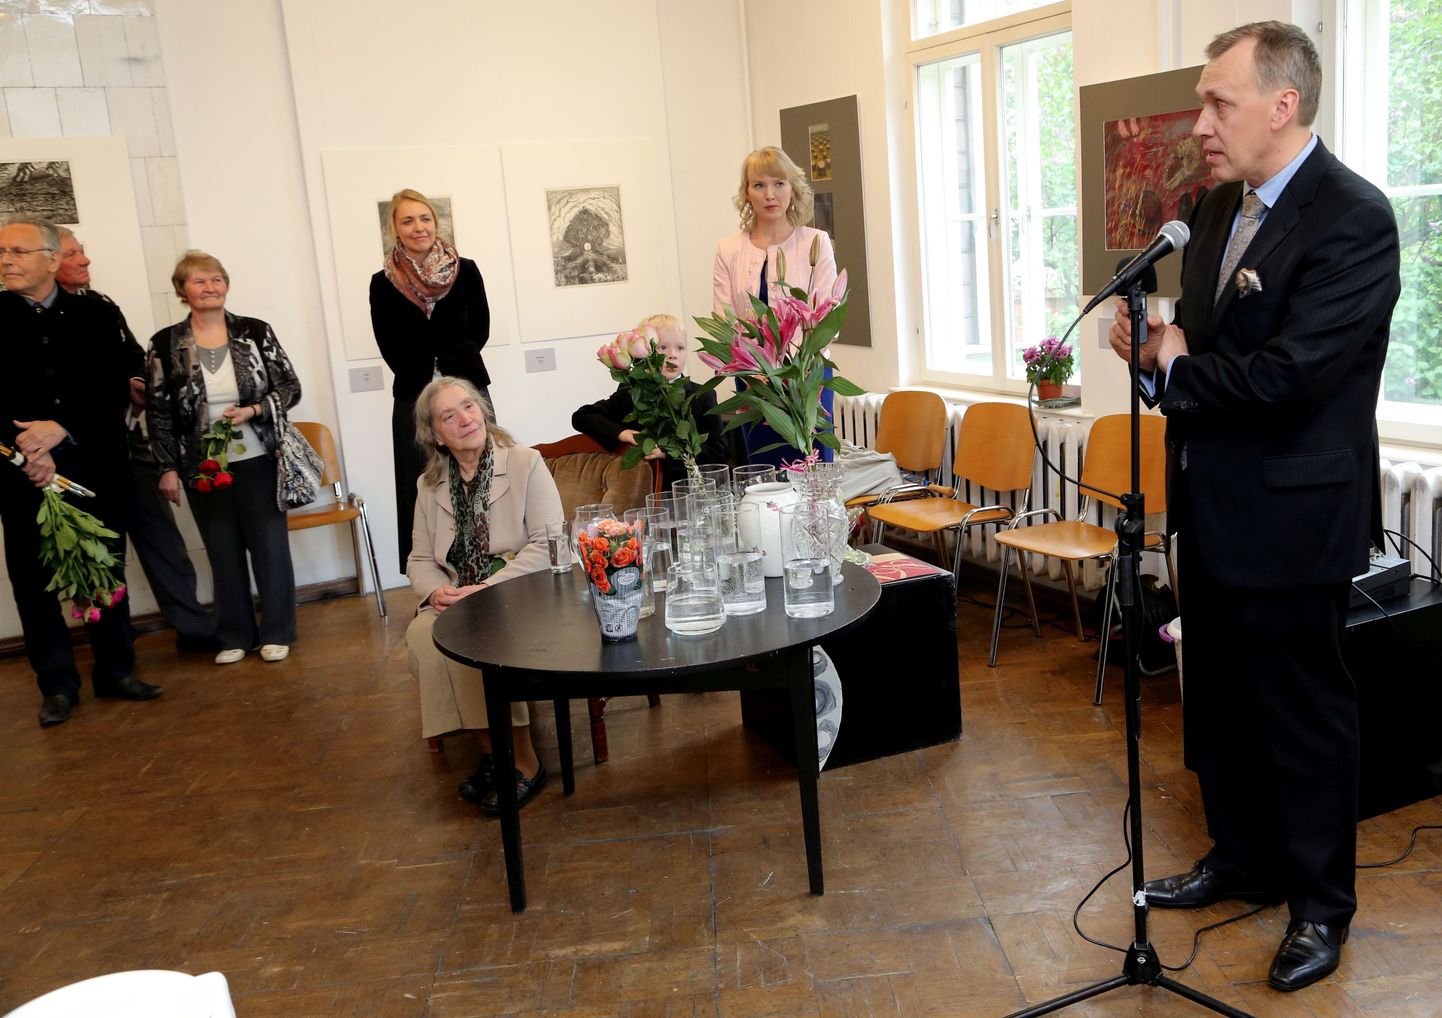 Kaks kunstnikku: poeg Aapo Pukk on mikrofoni juures ja ema Laine Pukk kuulab teda laua taga, mis on kaetud lillede ootel vaasidega.